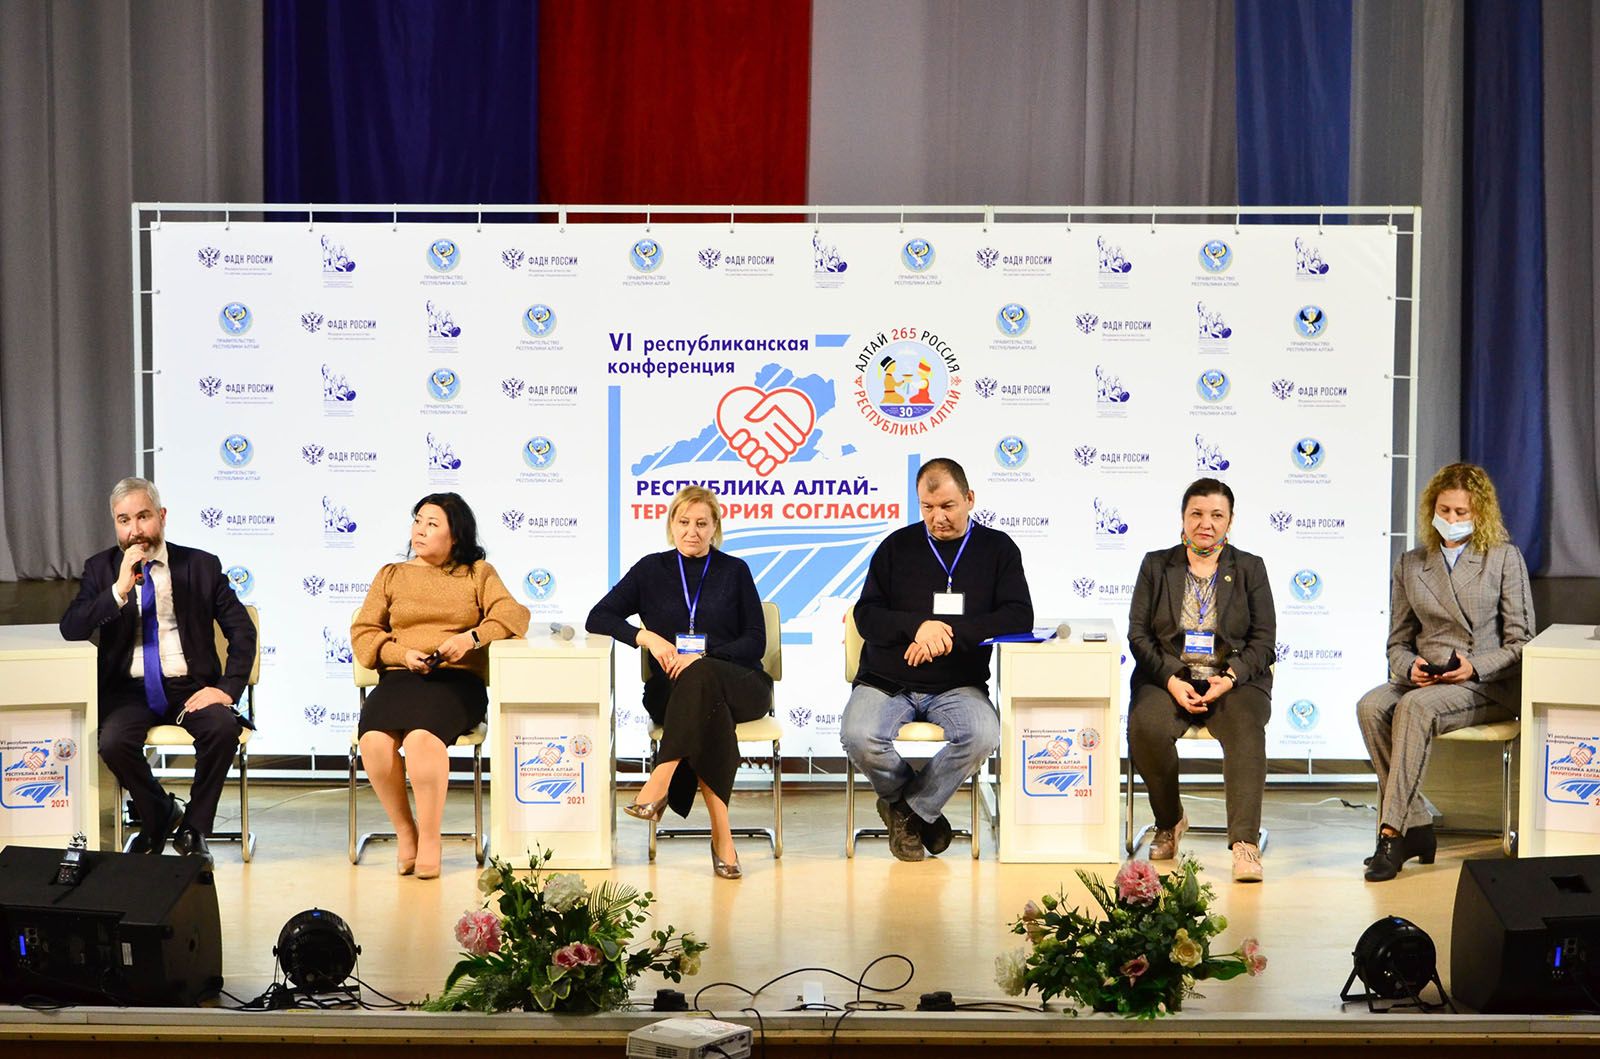 VI республиканская конференция «Алтай - территория согласия»